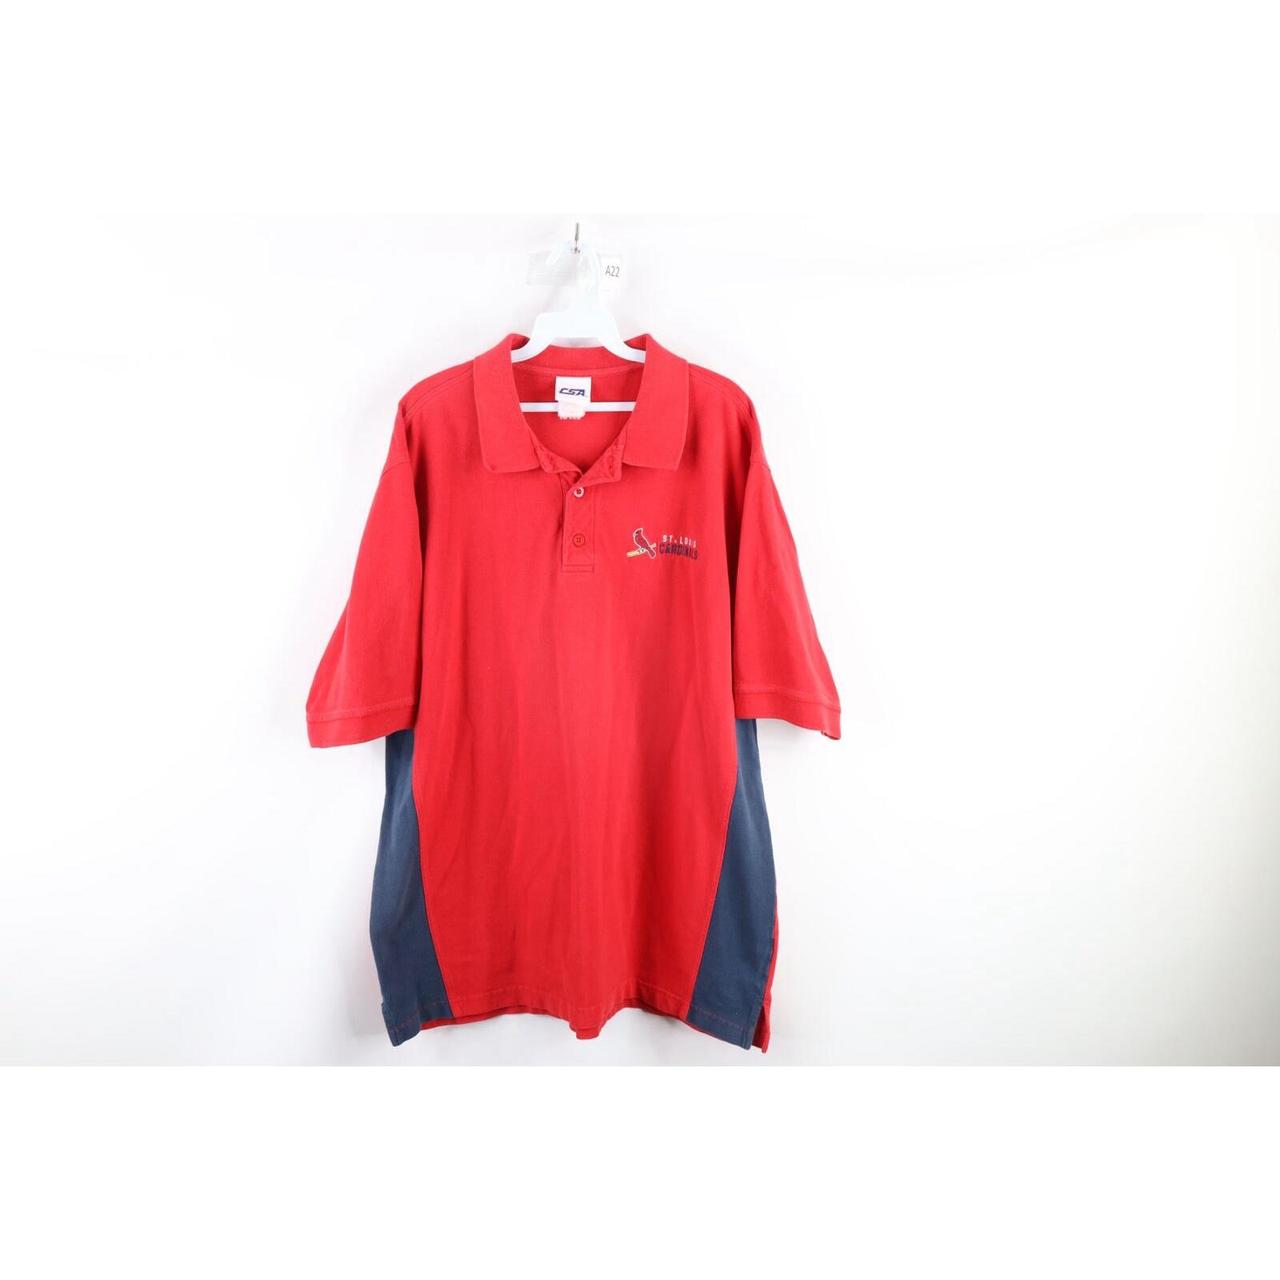 Vintage 1990s St. Louis Cardinals Button Up Shirt Mens Size XL